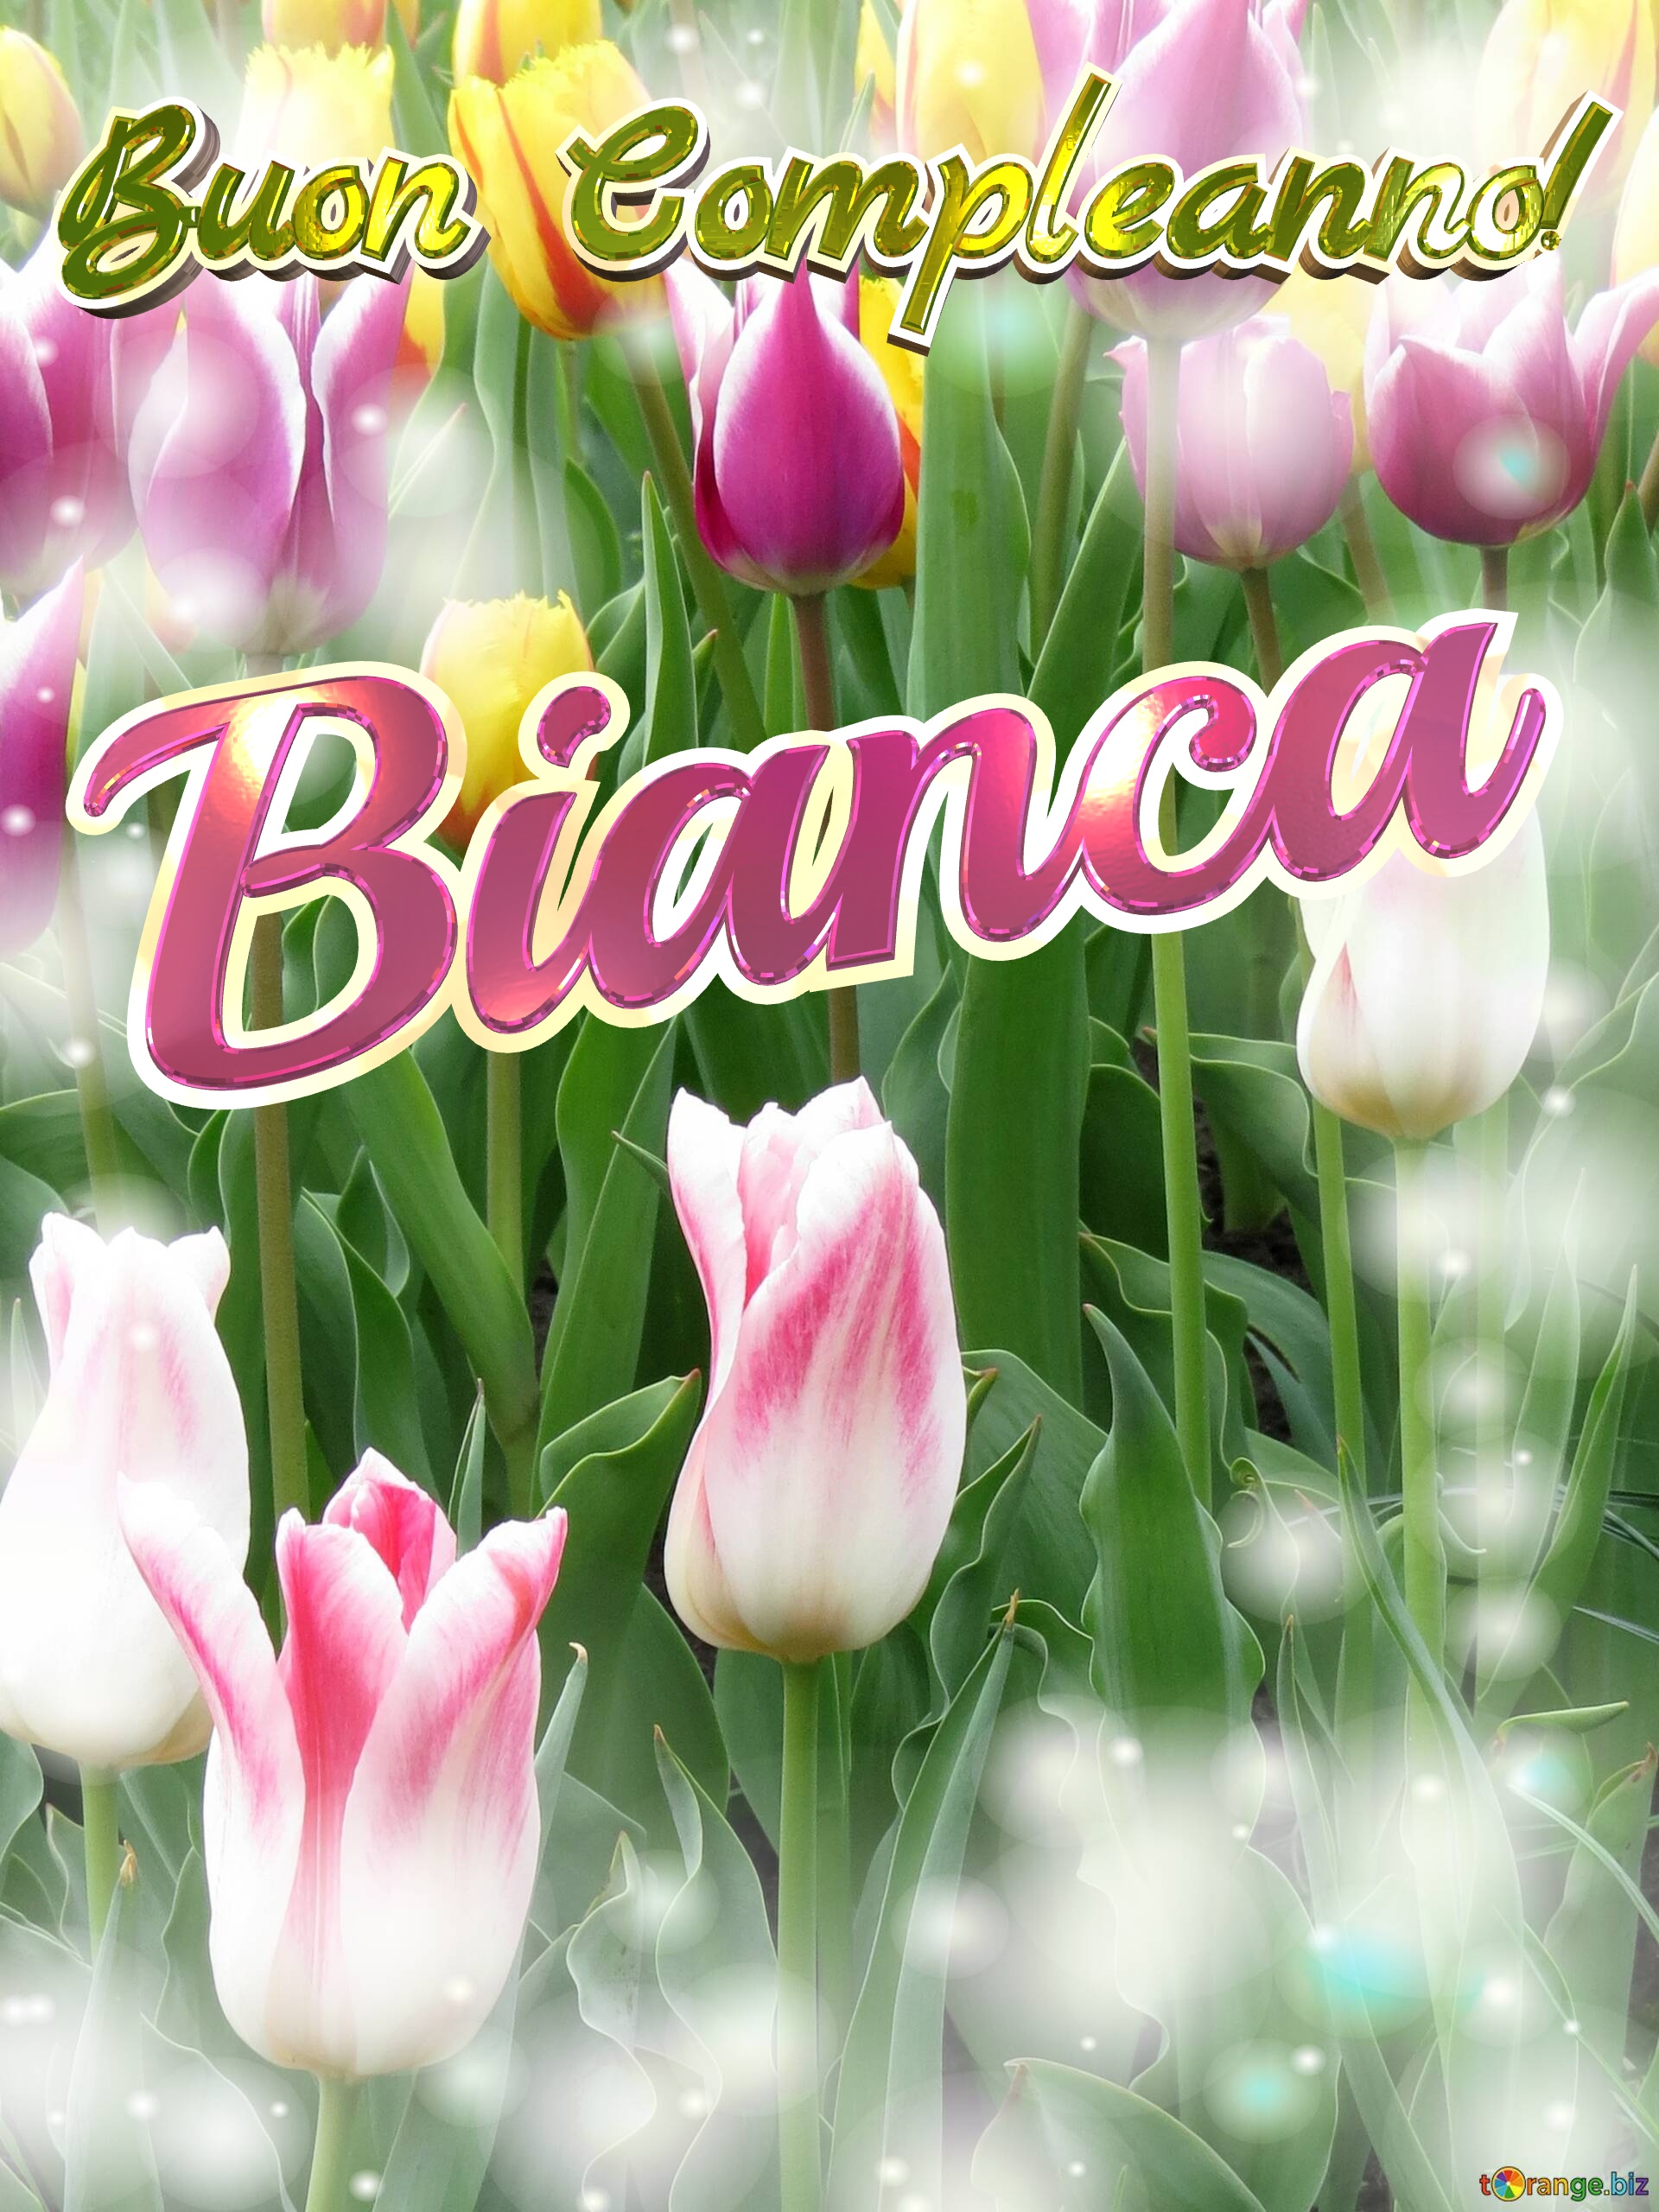 Buon Compleanno! Bianca  Che questi tulipani ti portino la pace e la tranquillità che stai cercando nella tua vita. №0